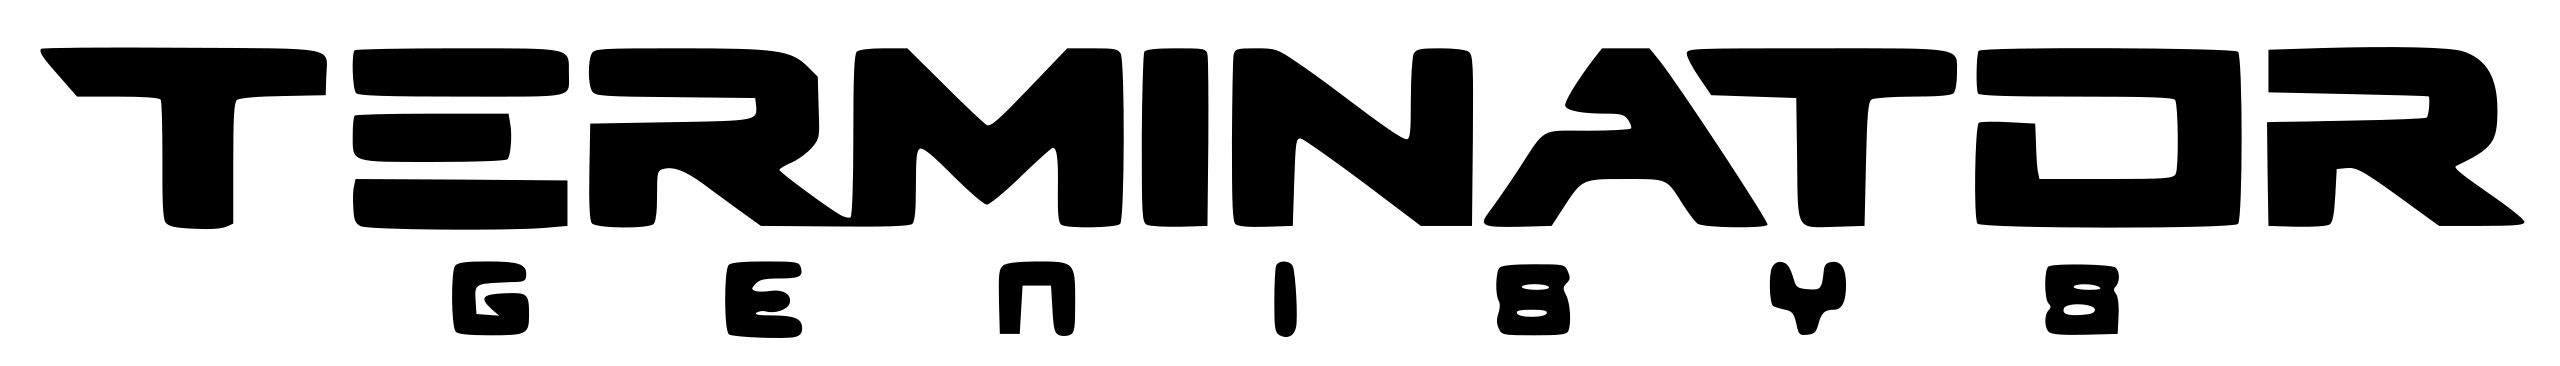 Файл логотипа терминатора PNG